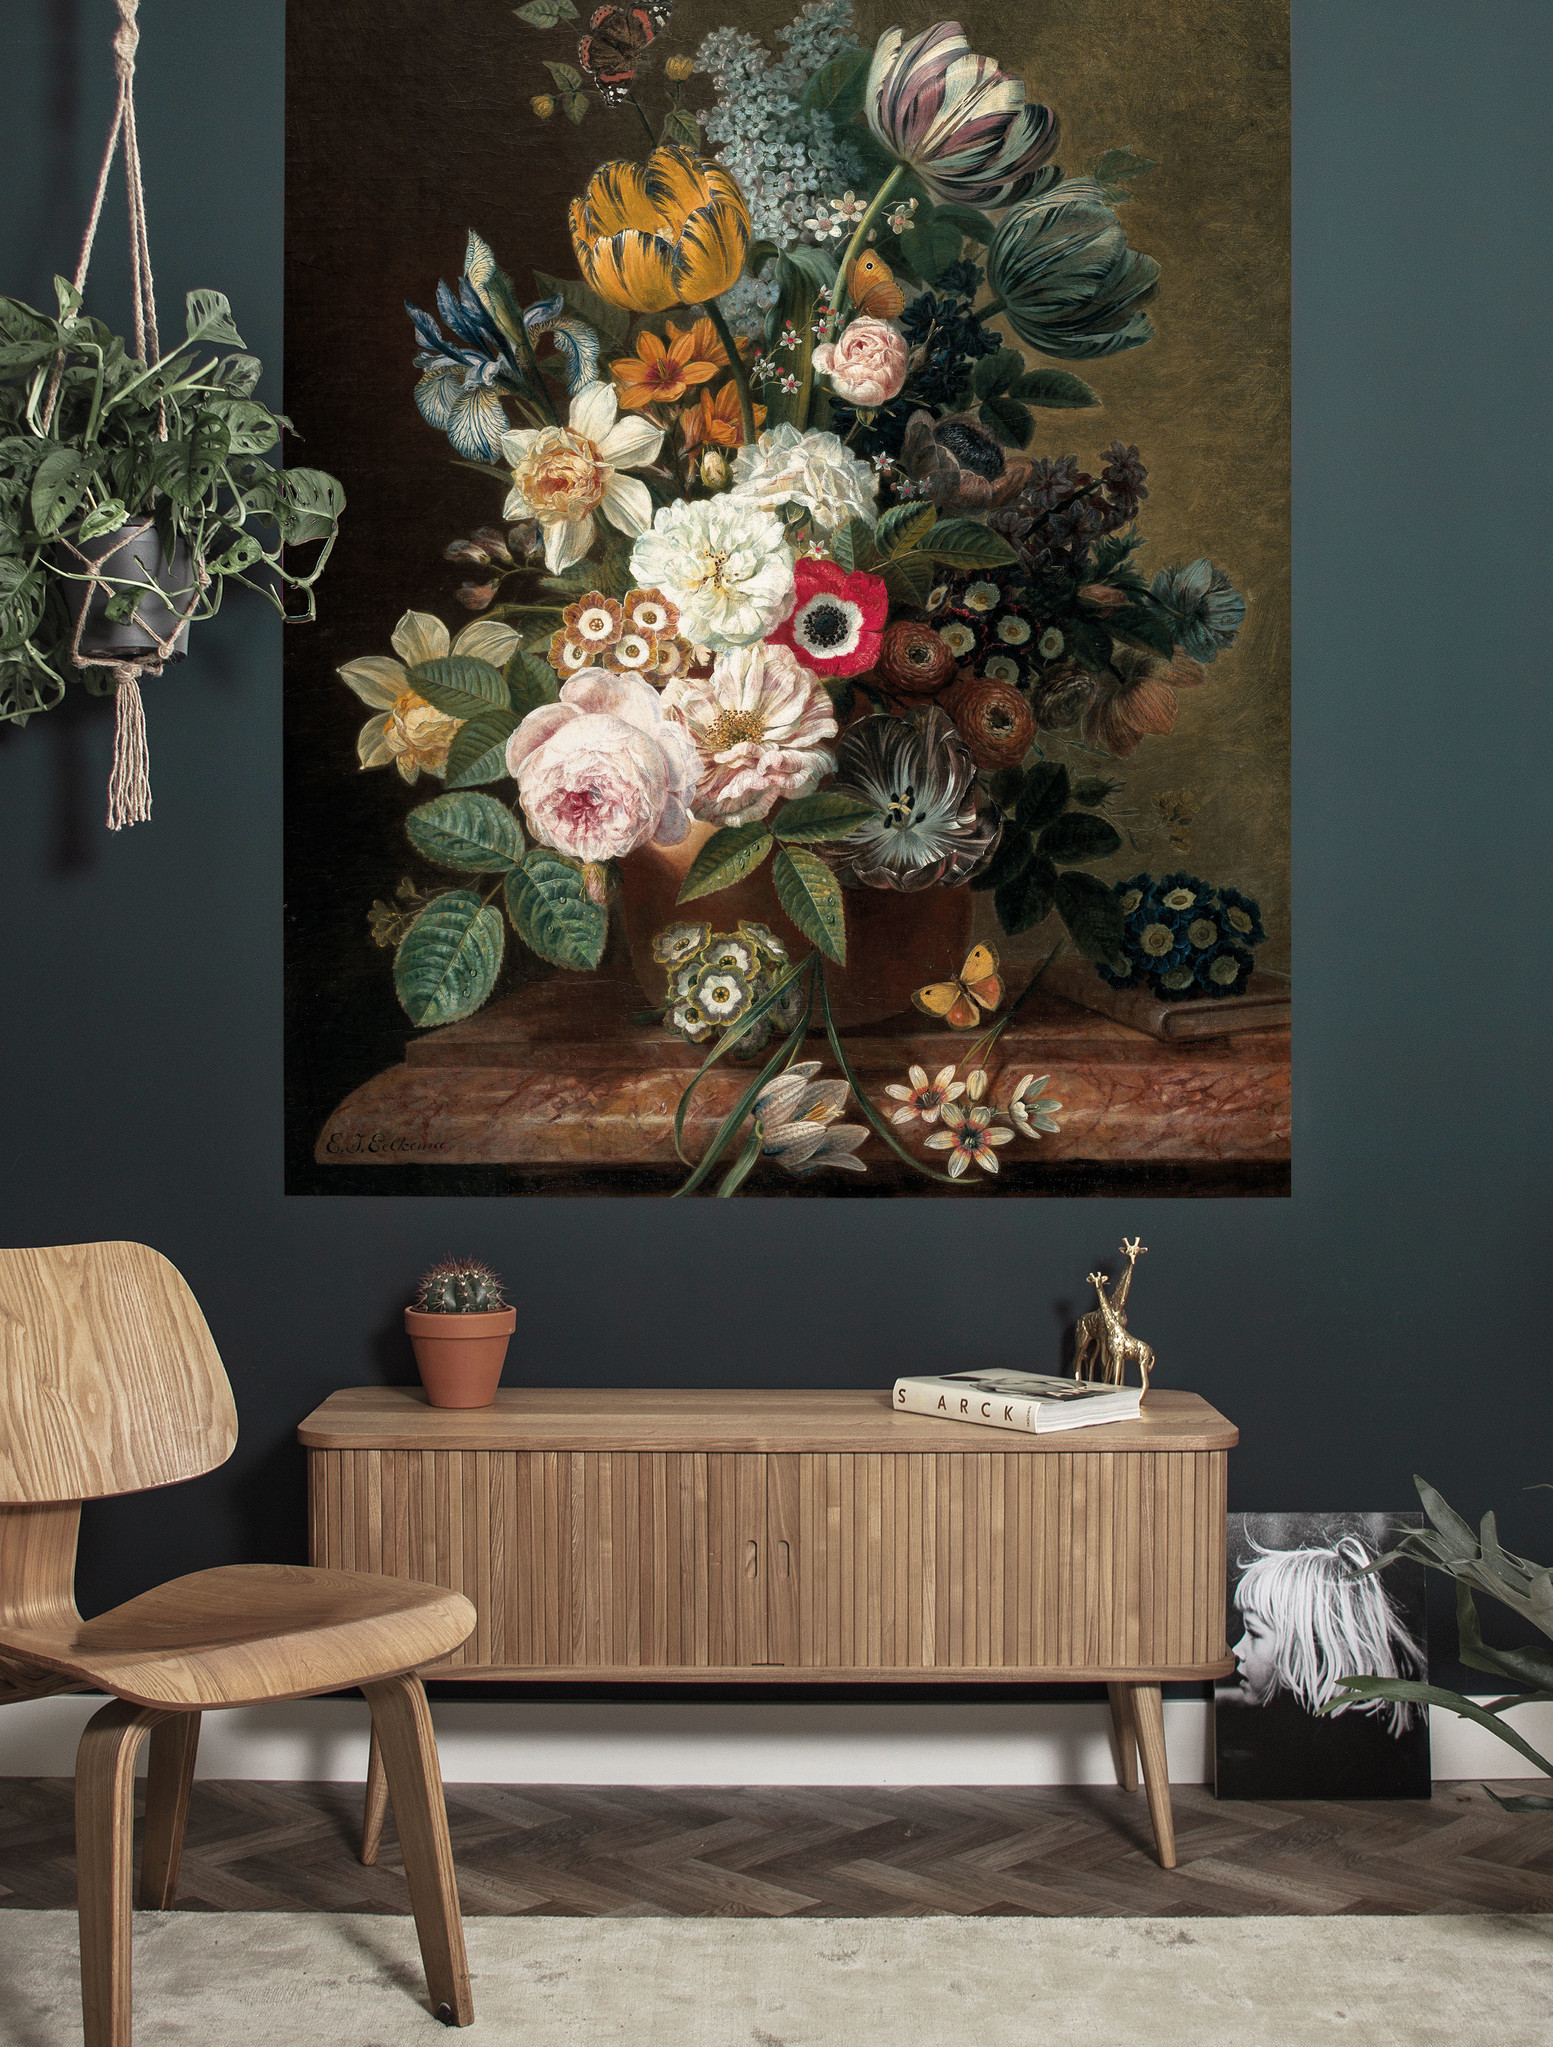 KEK Wallpaper Panel, Golden Age Flowers 142,5x180cm-8719743888654-31